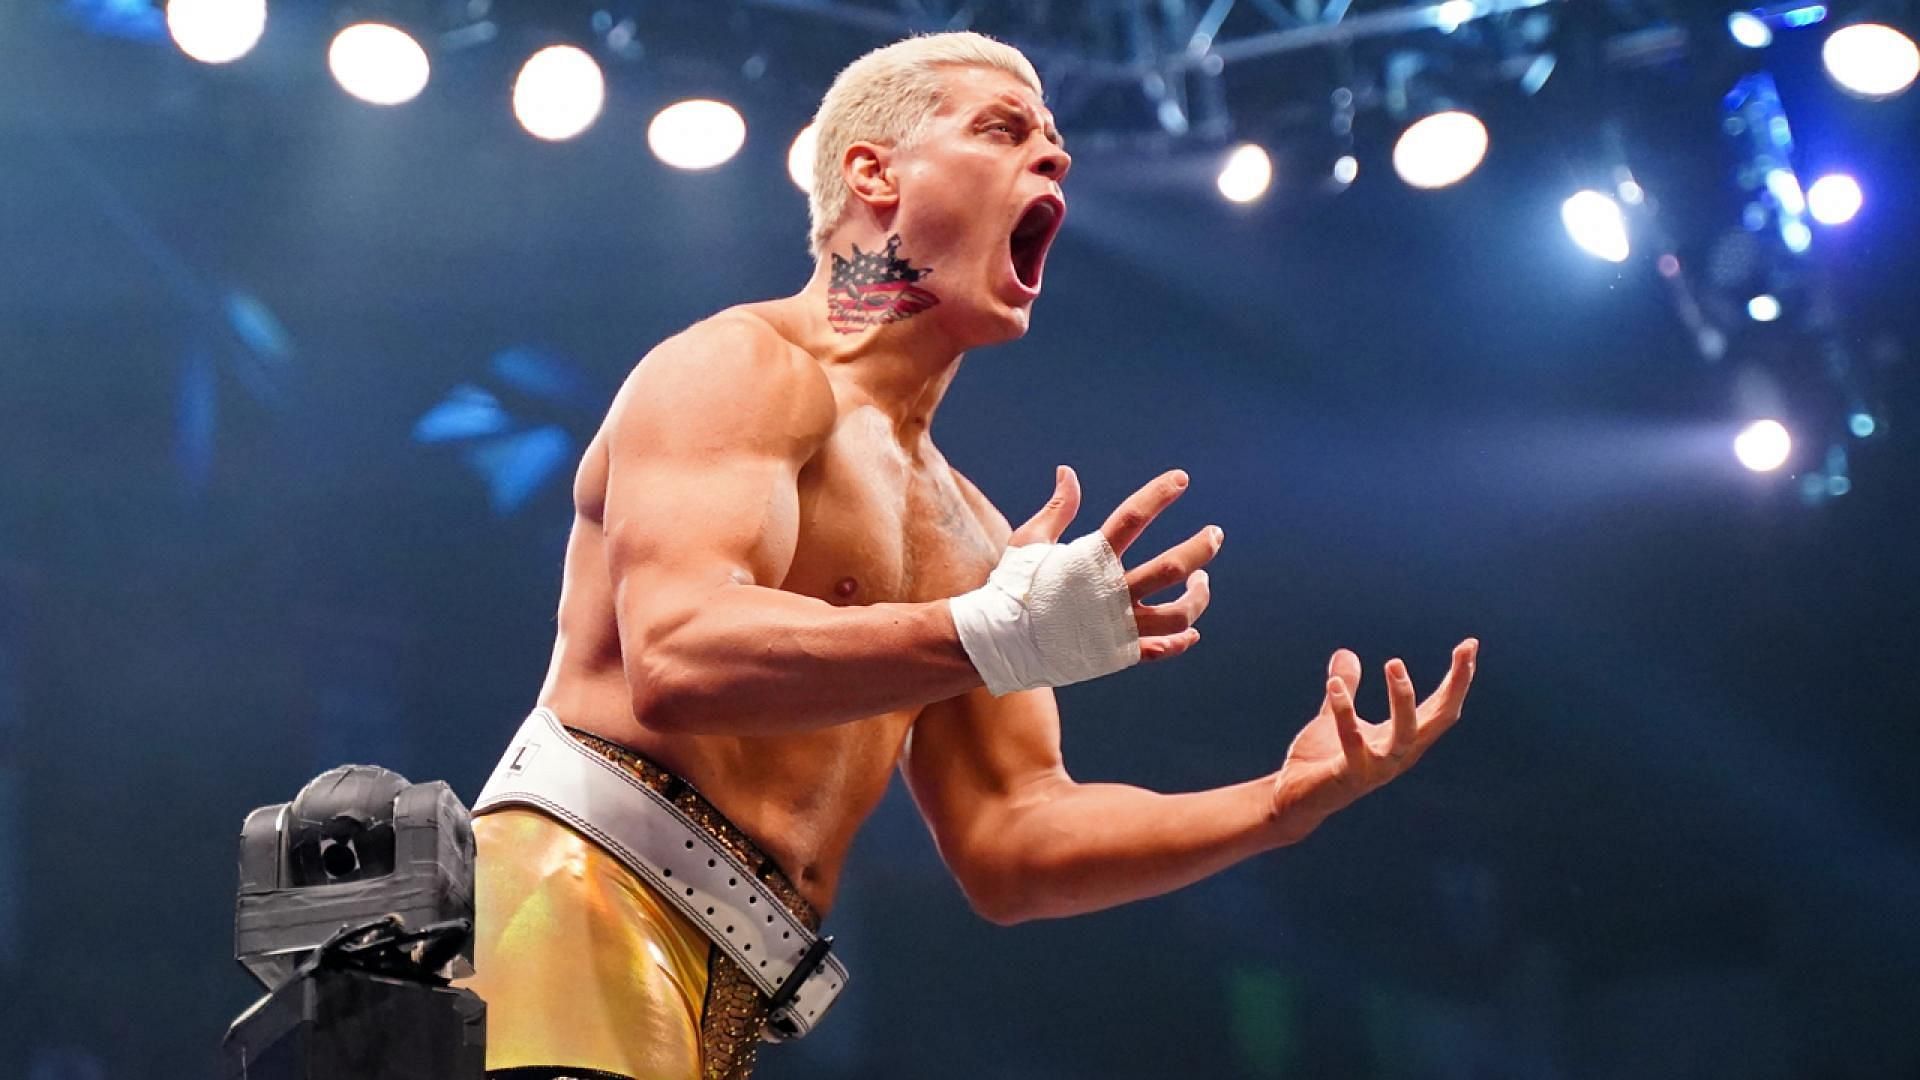 Cody Rhodes has left All Elite Wrestling.